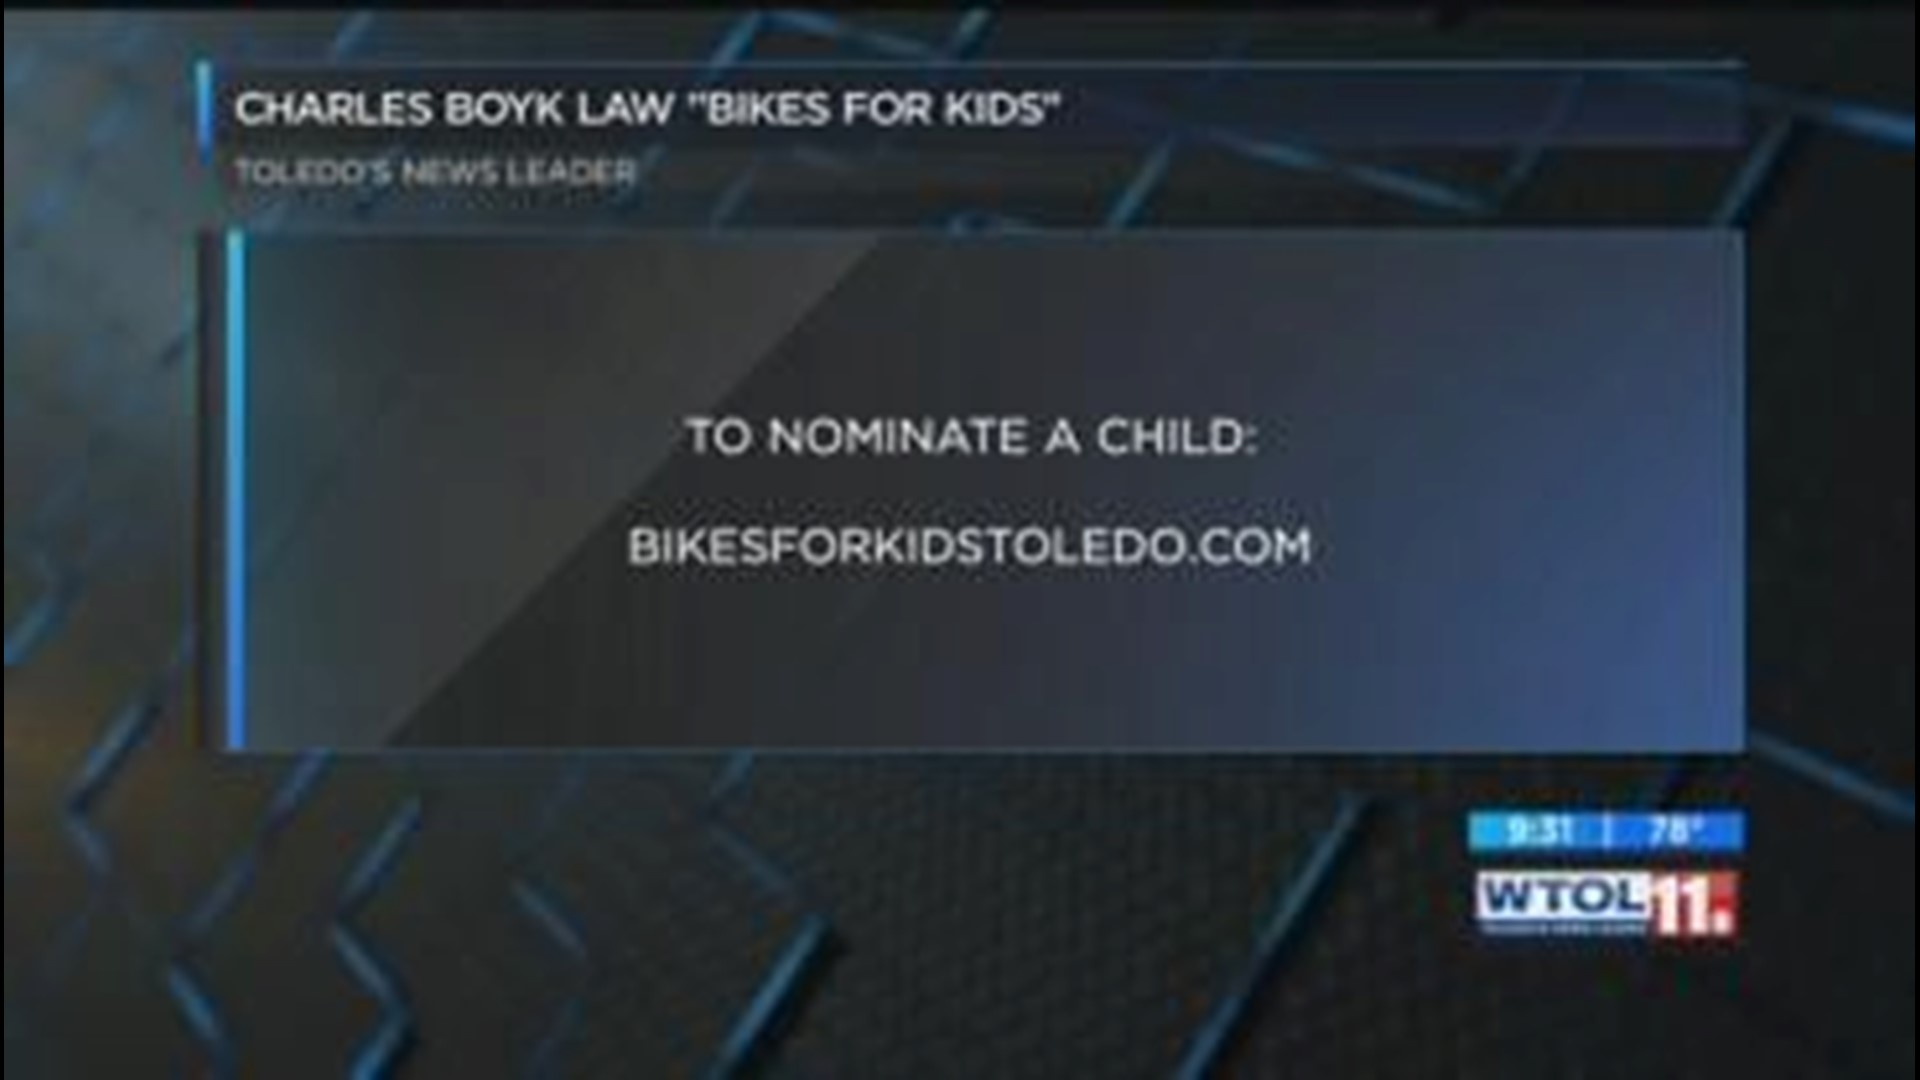 Bikes for Kids winner: July 5, 2018